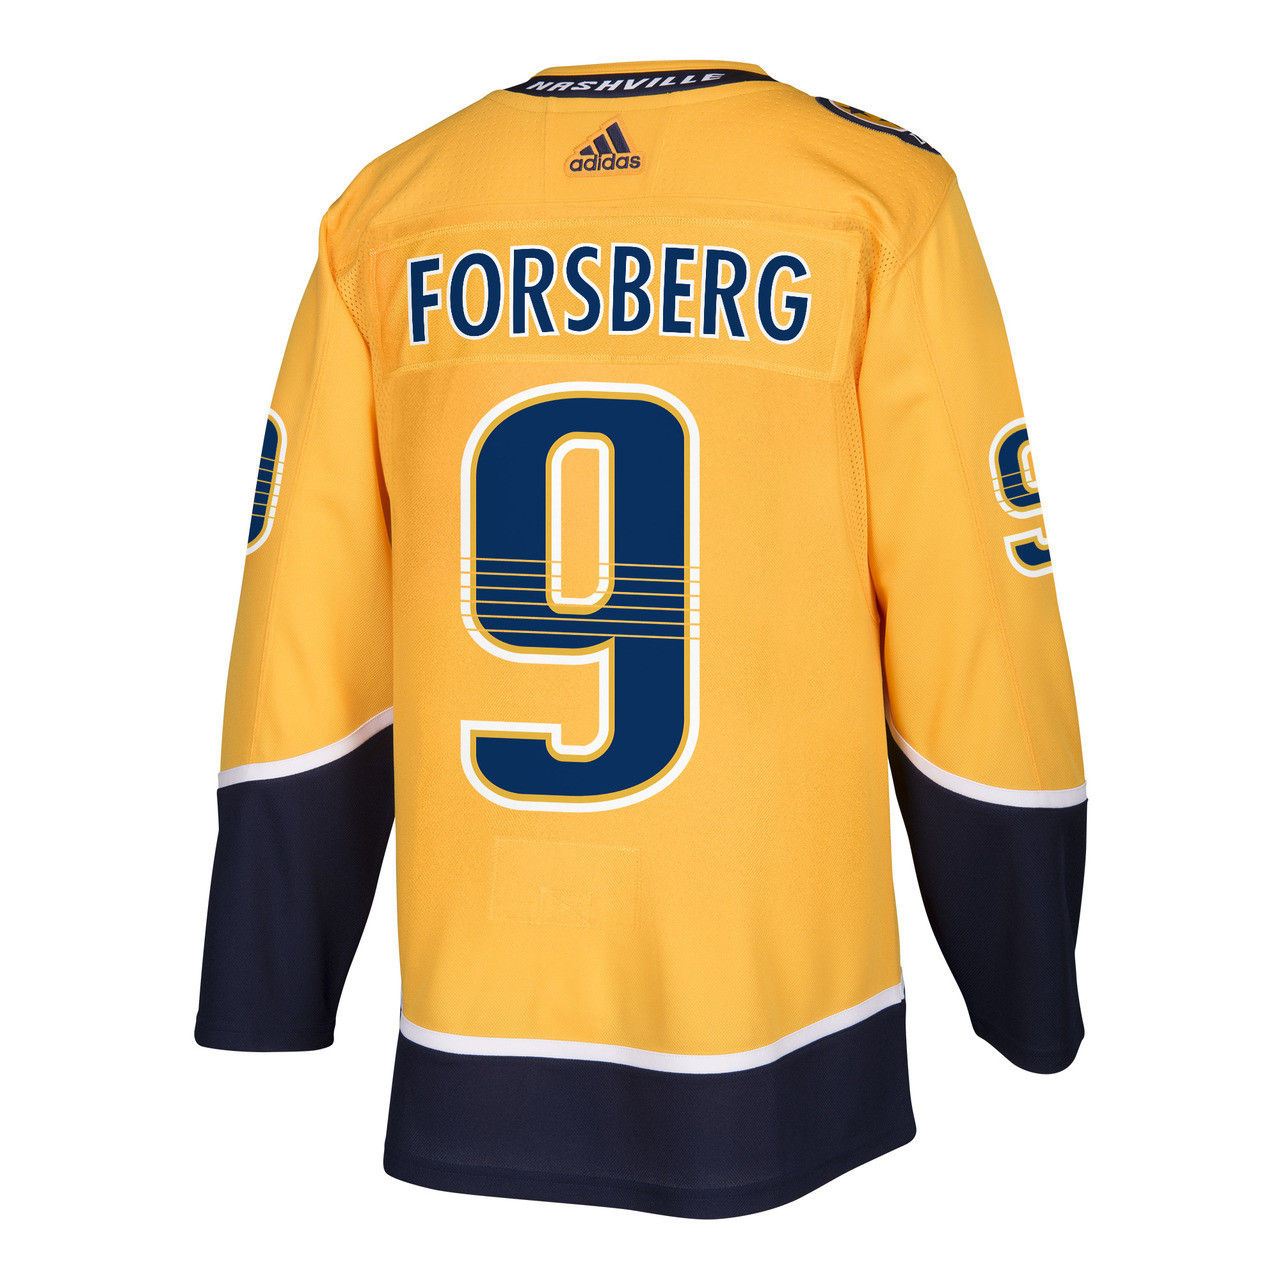 Nashville Forsbergs Carl Filip Forsberg Ice Hockey Predators T Shirt